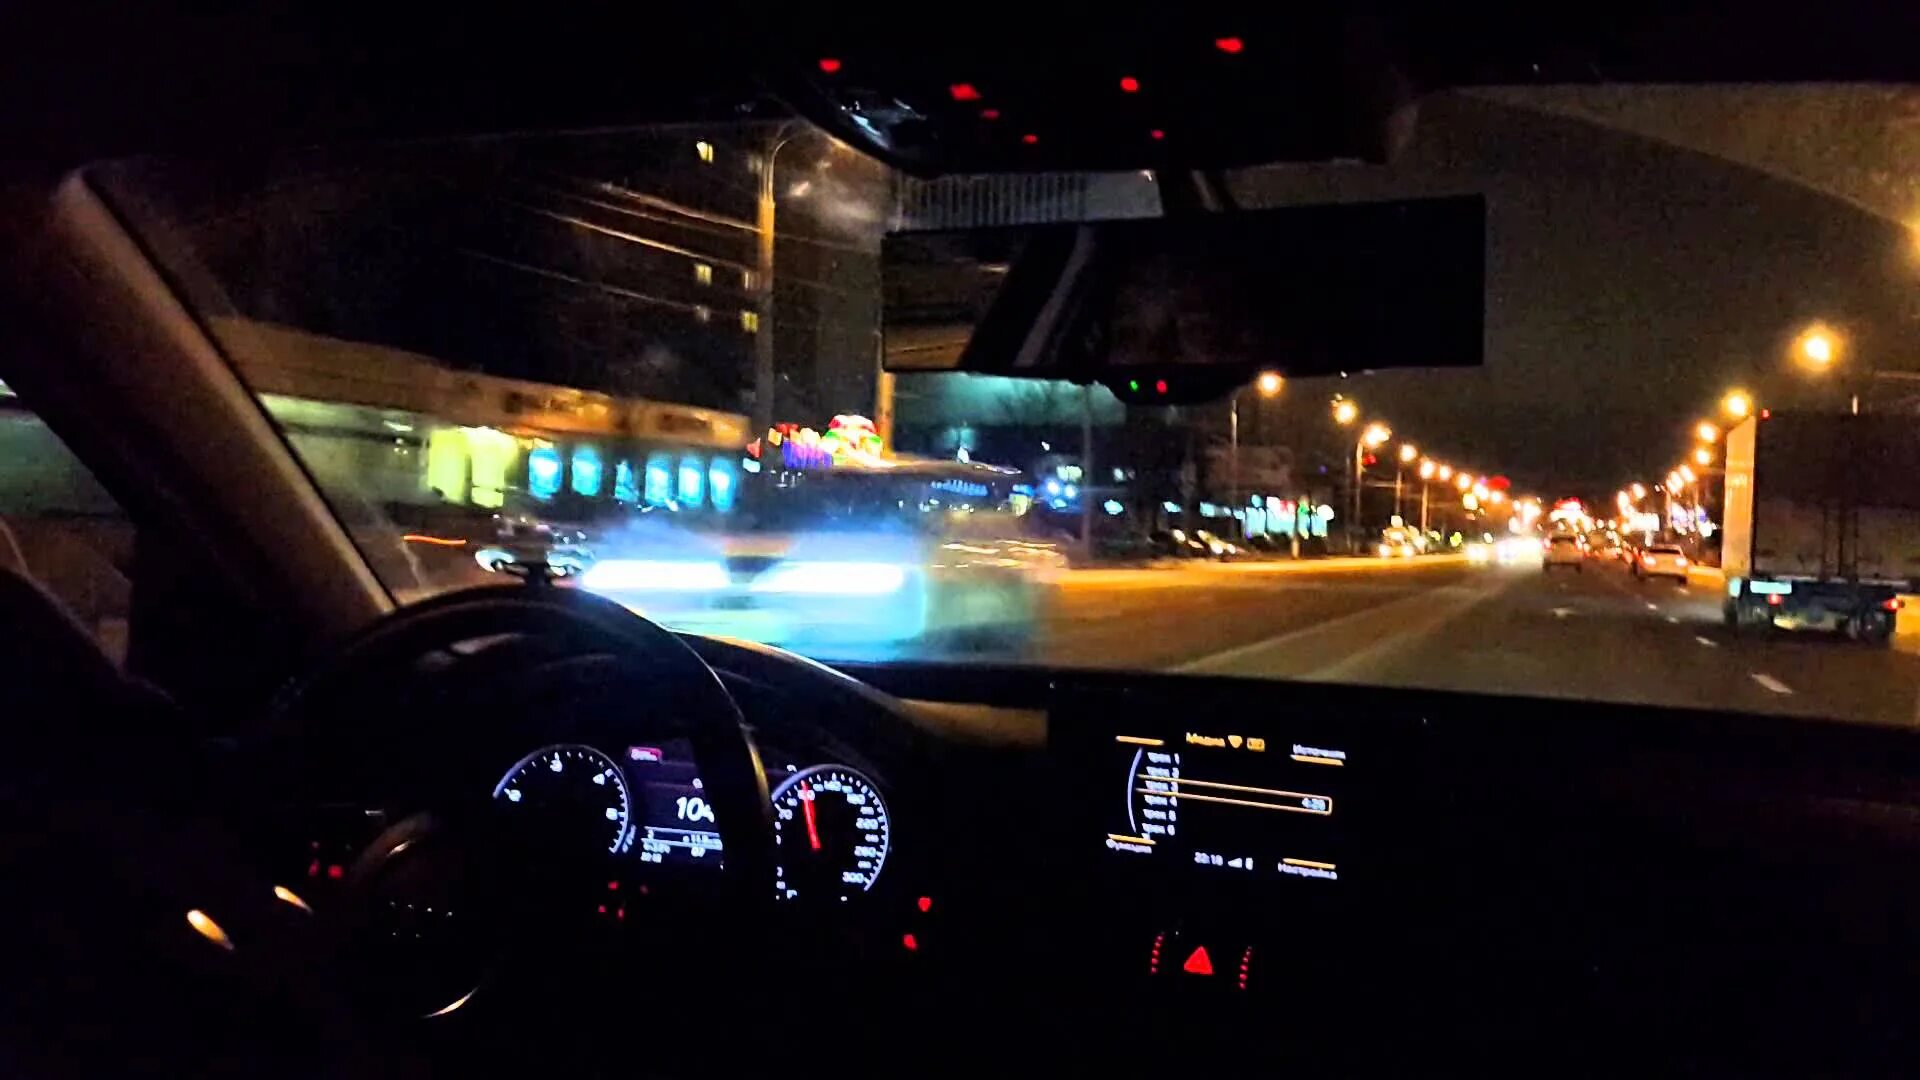 БМВ м5 покатушки. Машина внутри ночью. Вид из машины на ночной город. Вид из салона автомобиля. Включи гудзон еду на машине